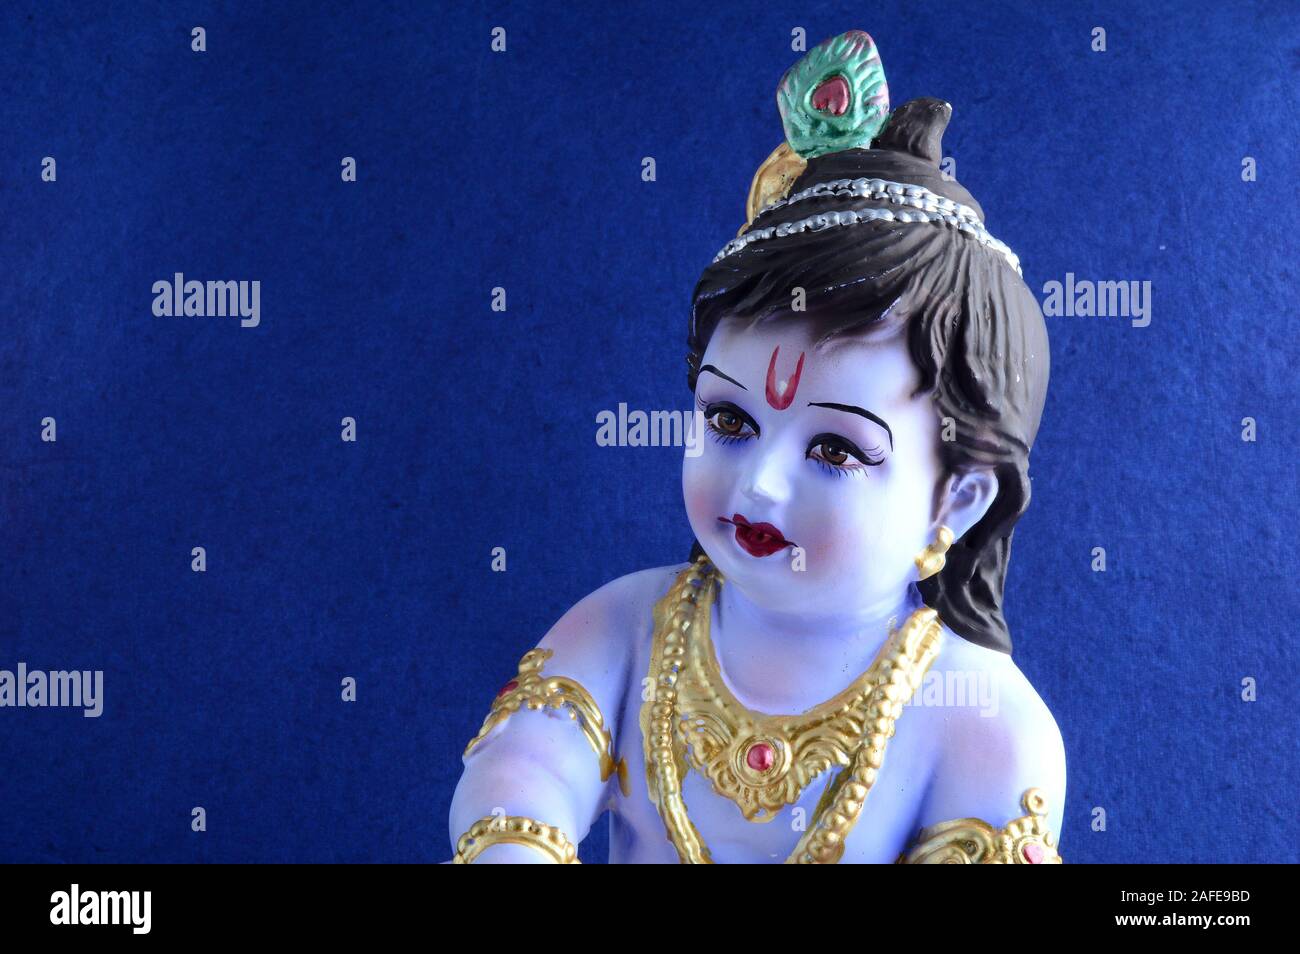 Hindu God Krishna on blue background Stock Photo - Alamy